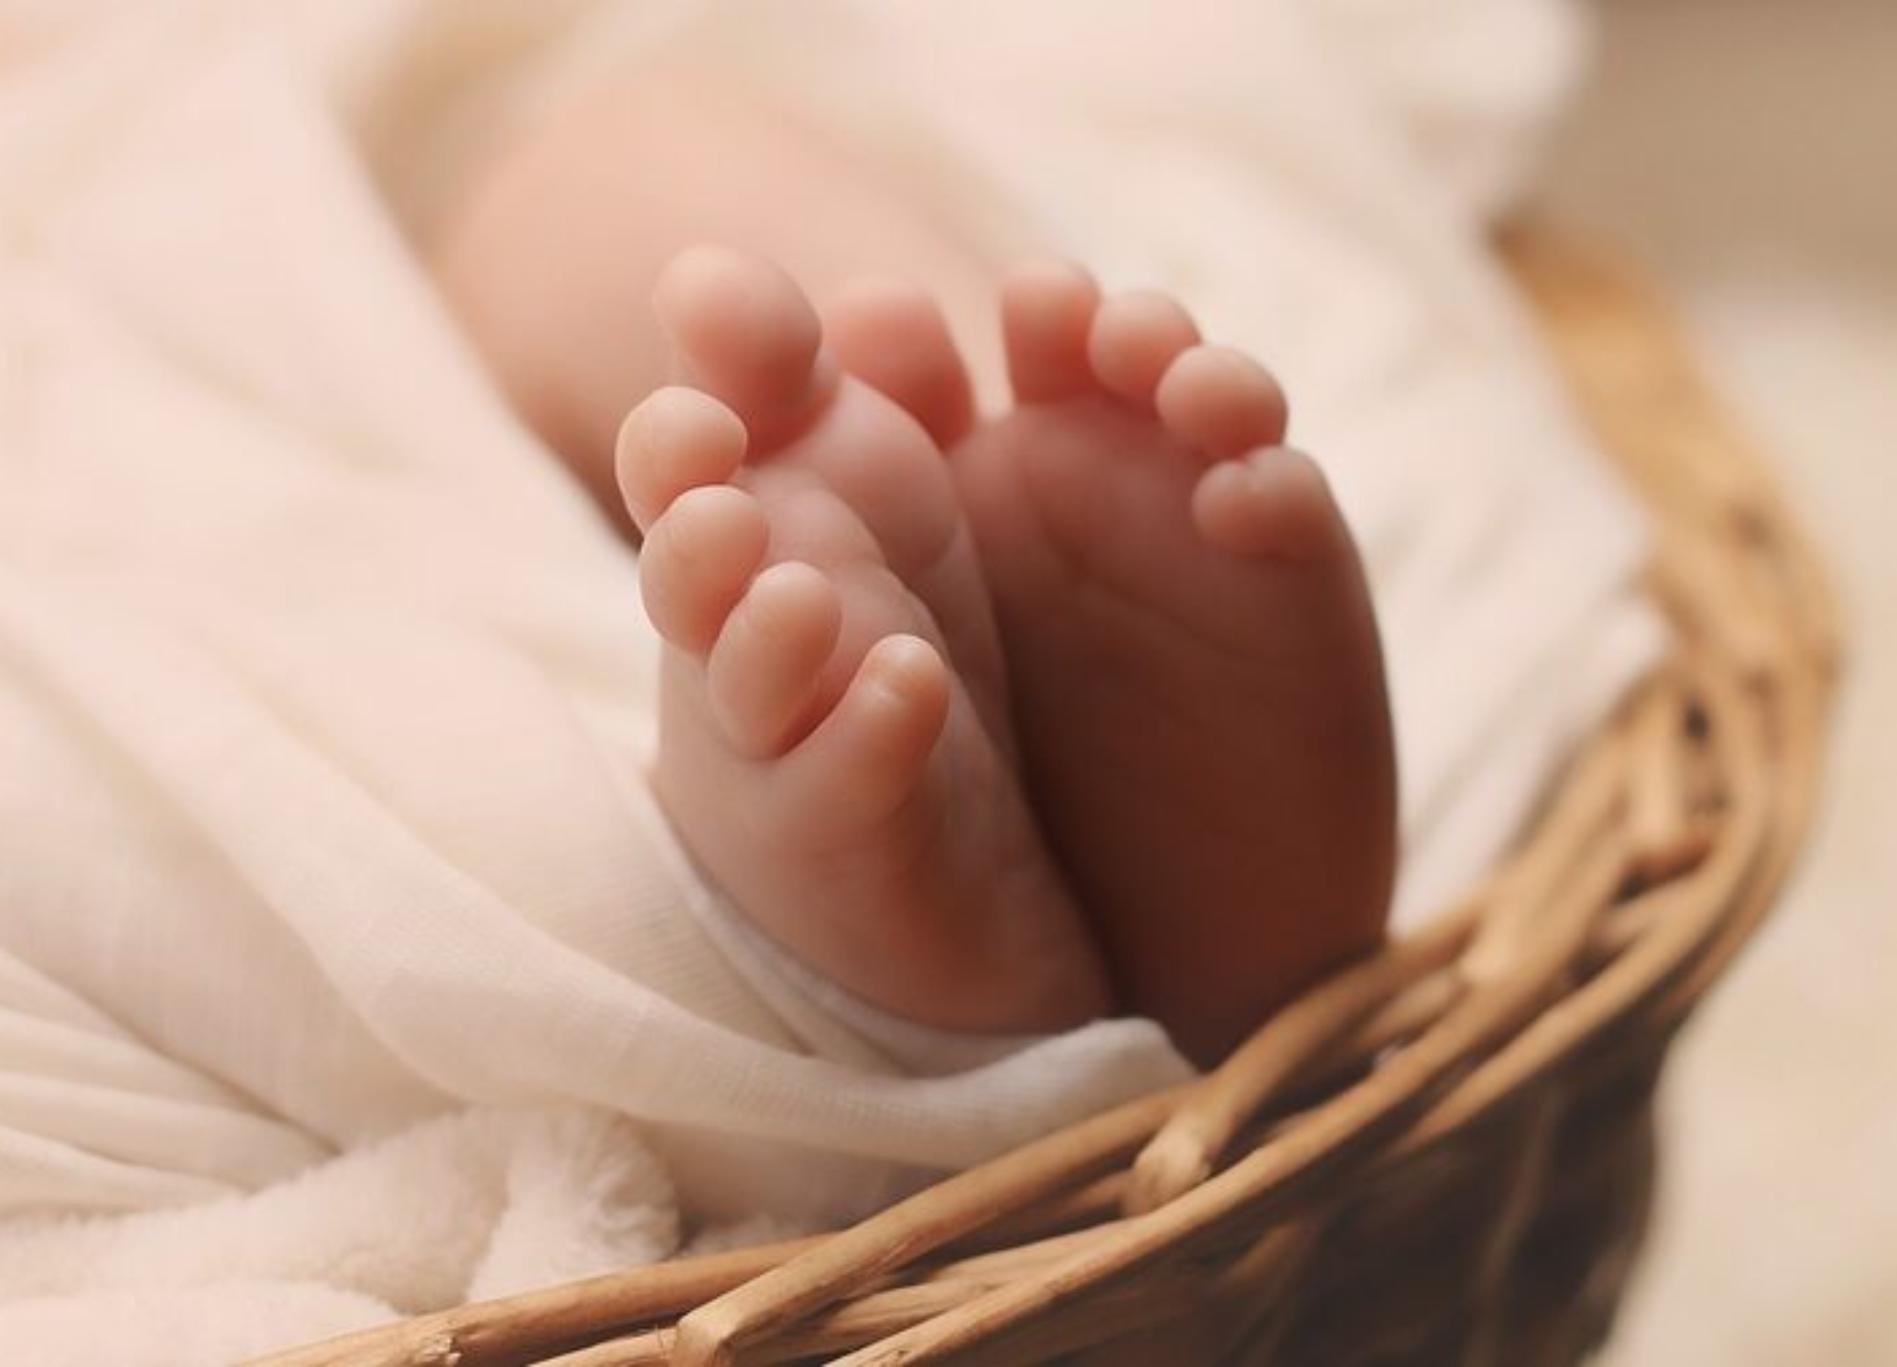 Λάρισα: Νέες αποκαλύψεις για το νεκρό βρέφος – Δεν ήξεραν ότι είναι έγκυος – «Εγώ το έθαψα» λέει ο αδερφός της μητέρας